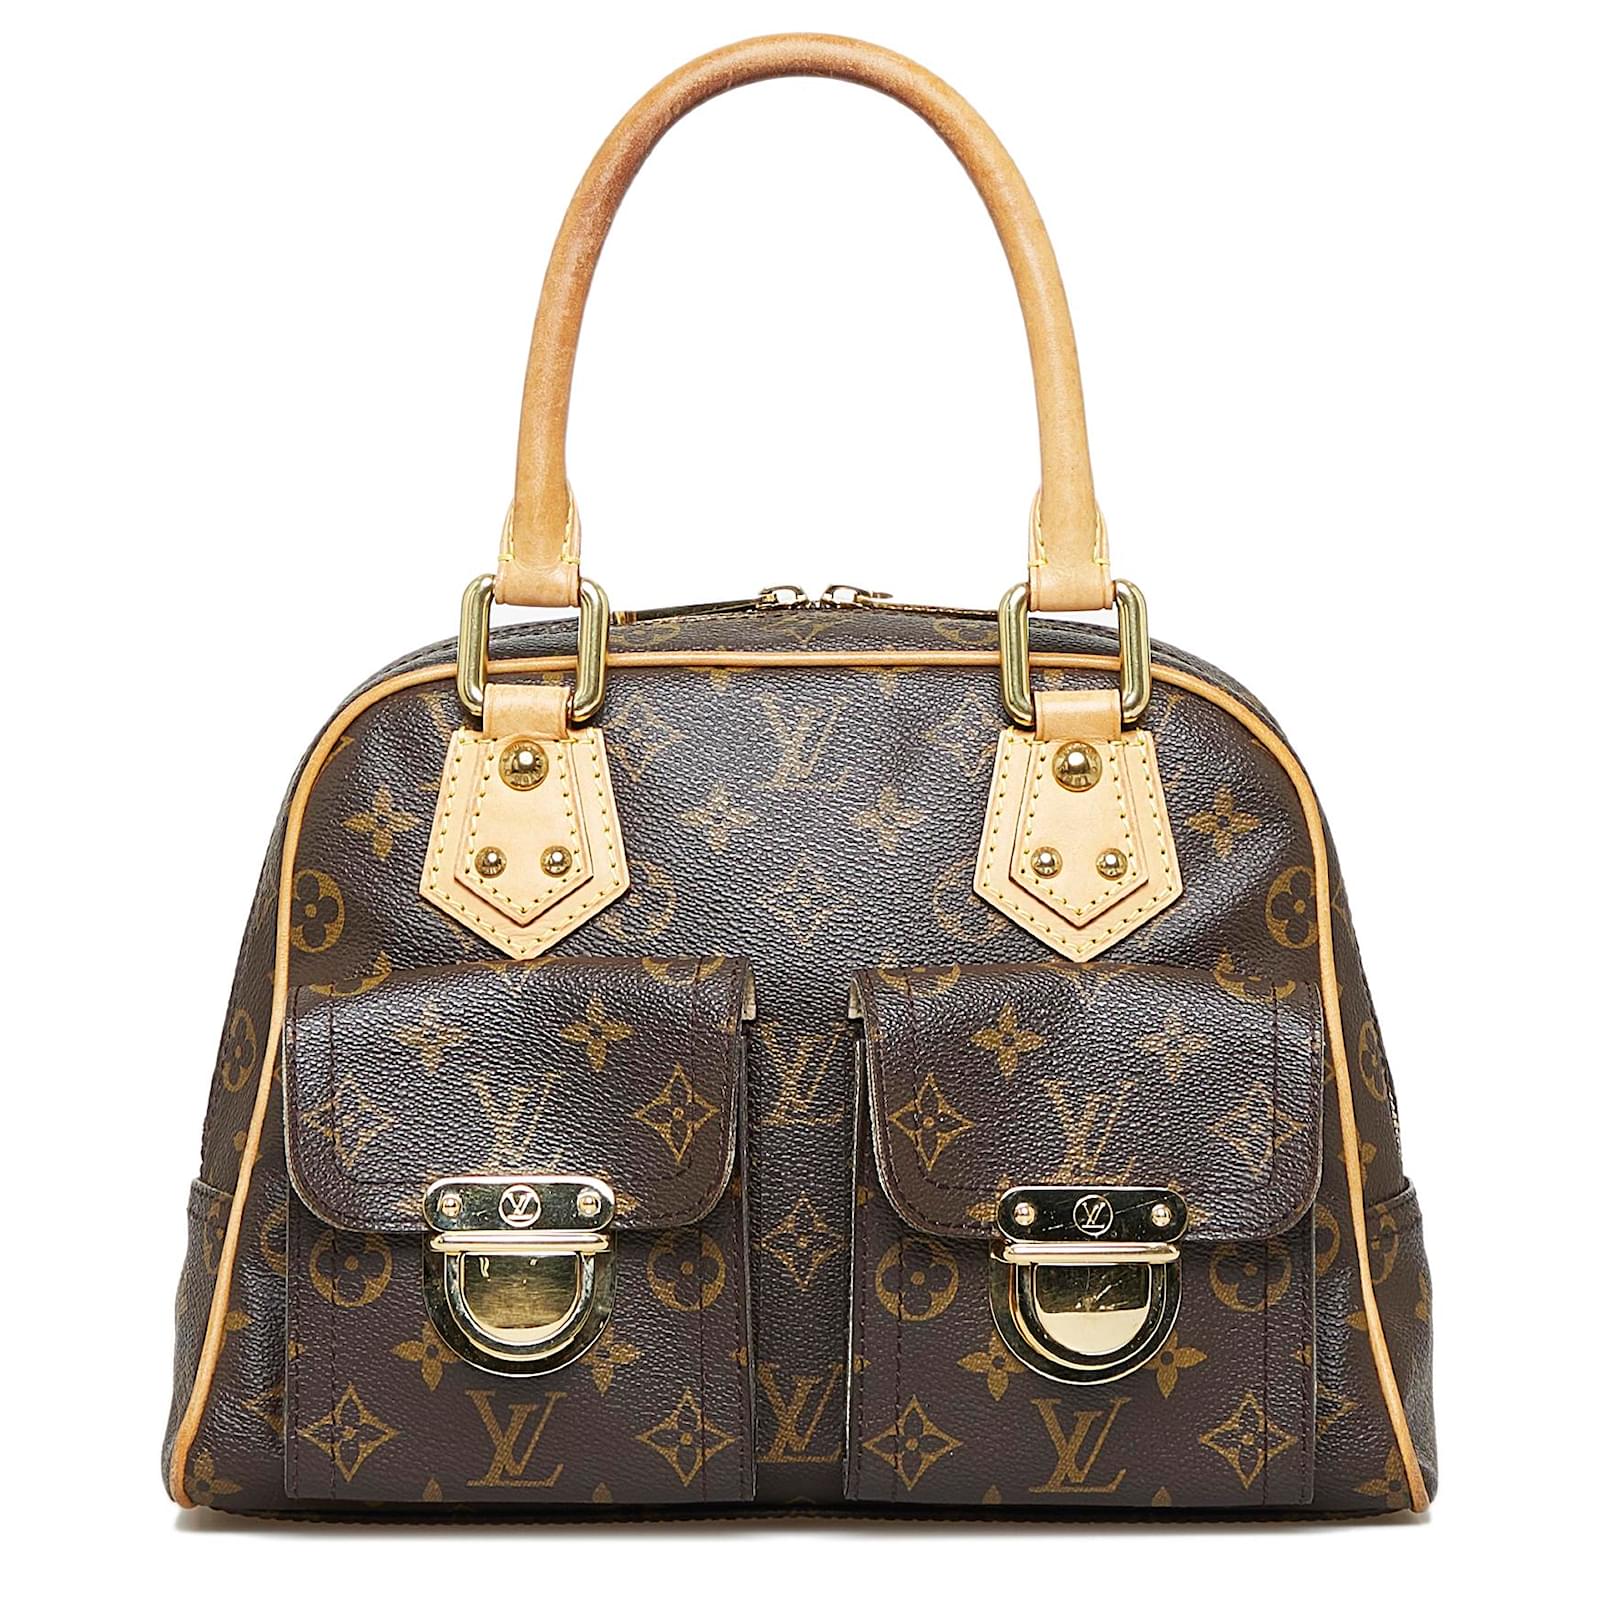 Best Deals for Louis Vuitton Manhattan Pm Bag